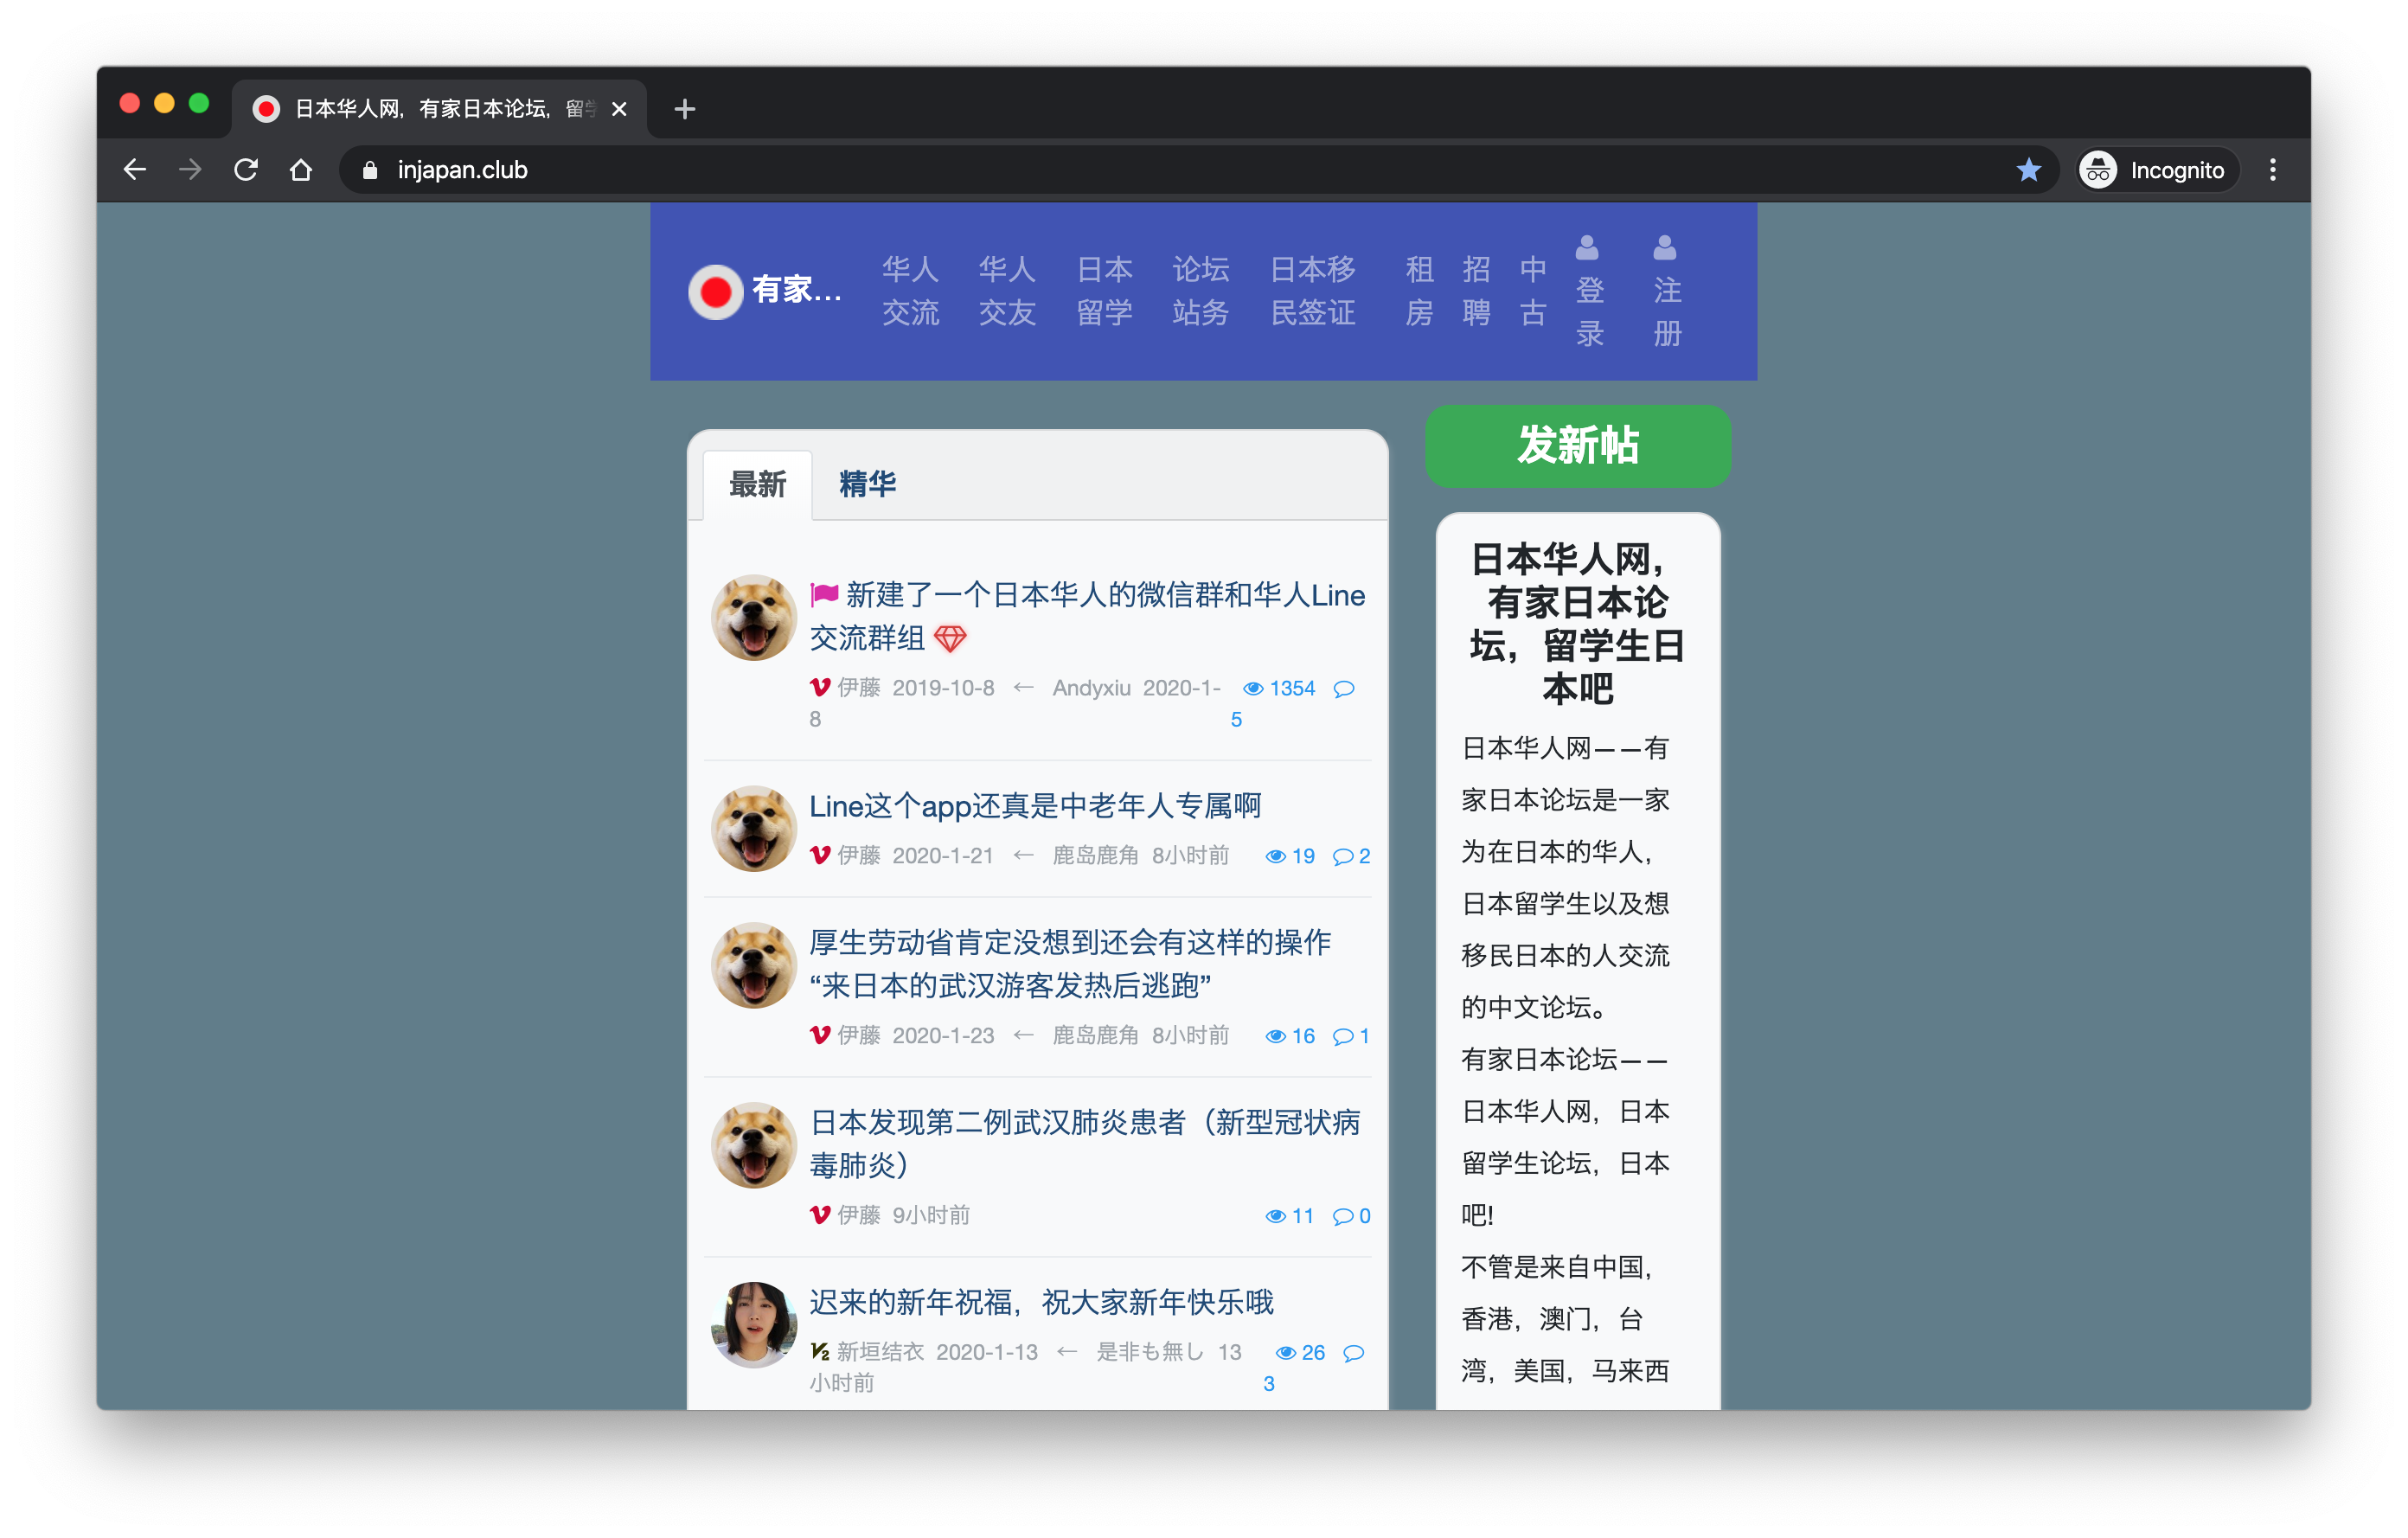 论坛在1280x800 分辨率的屏幕下显示过窄 站务 有家日本论坛 热闹有趣的日本华人网论坛